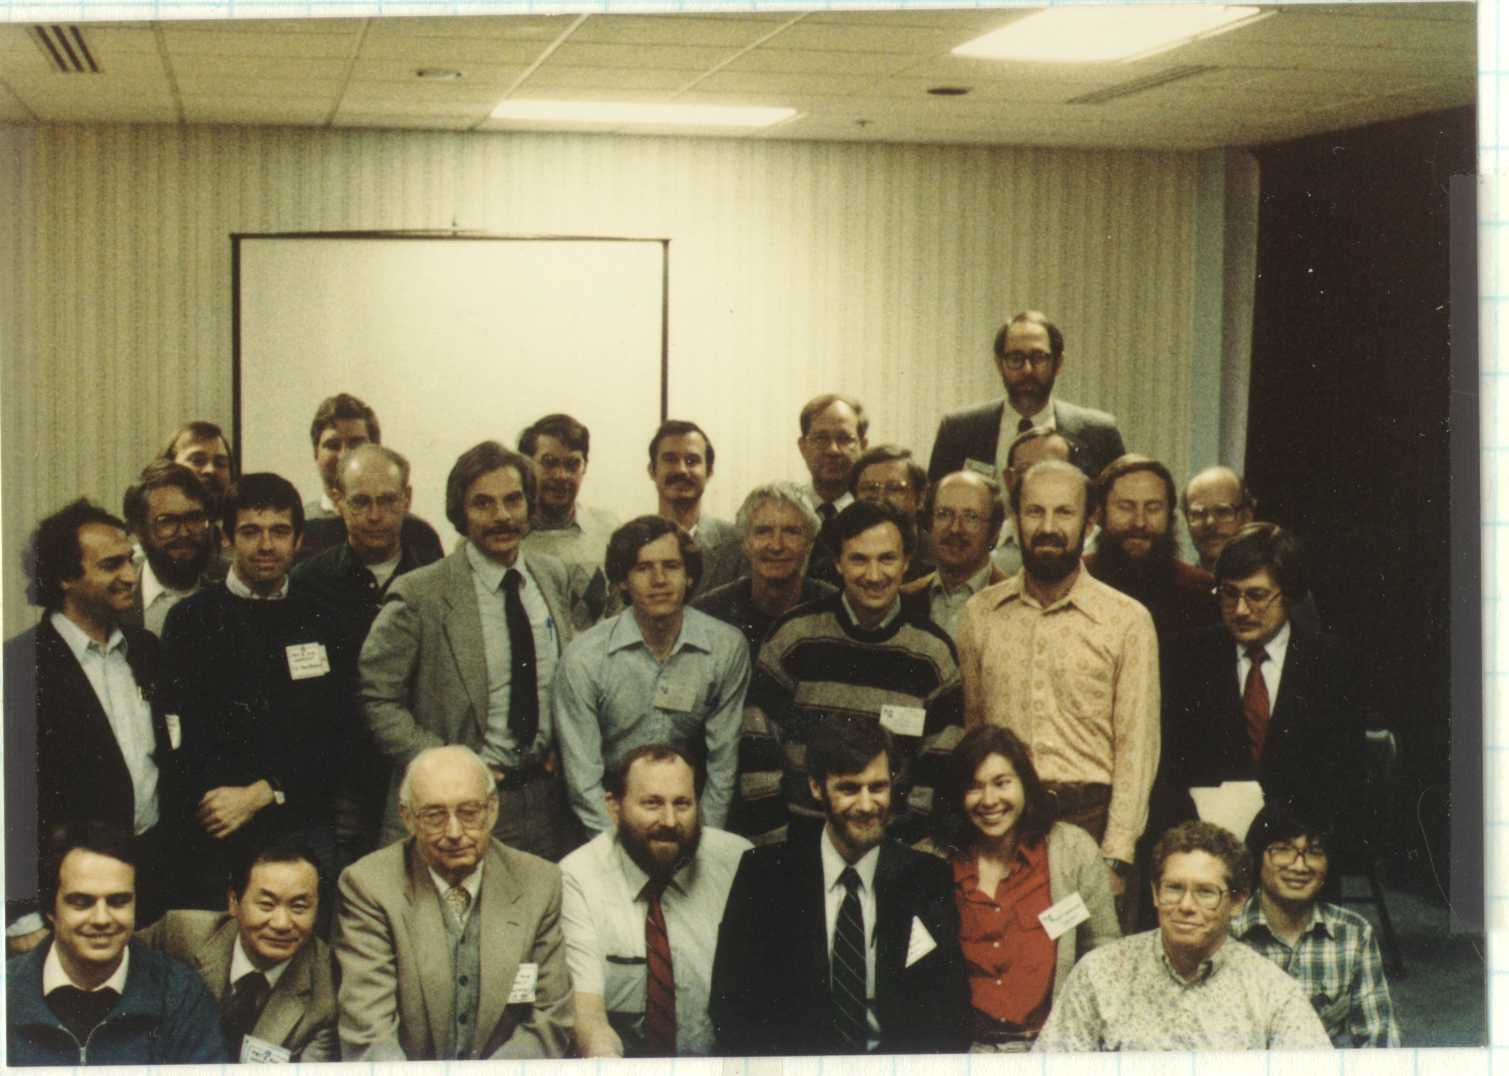 1985 epsilon Aurigae image workshop group photo.